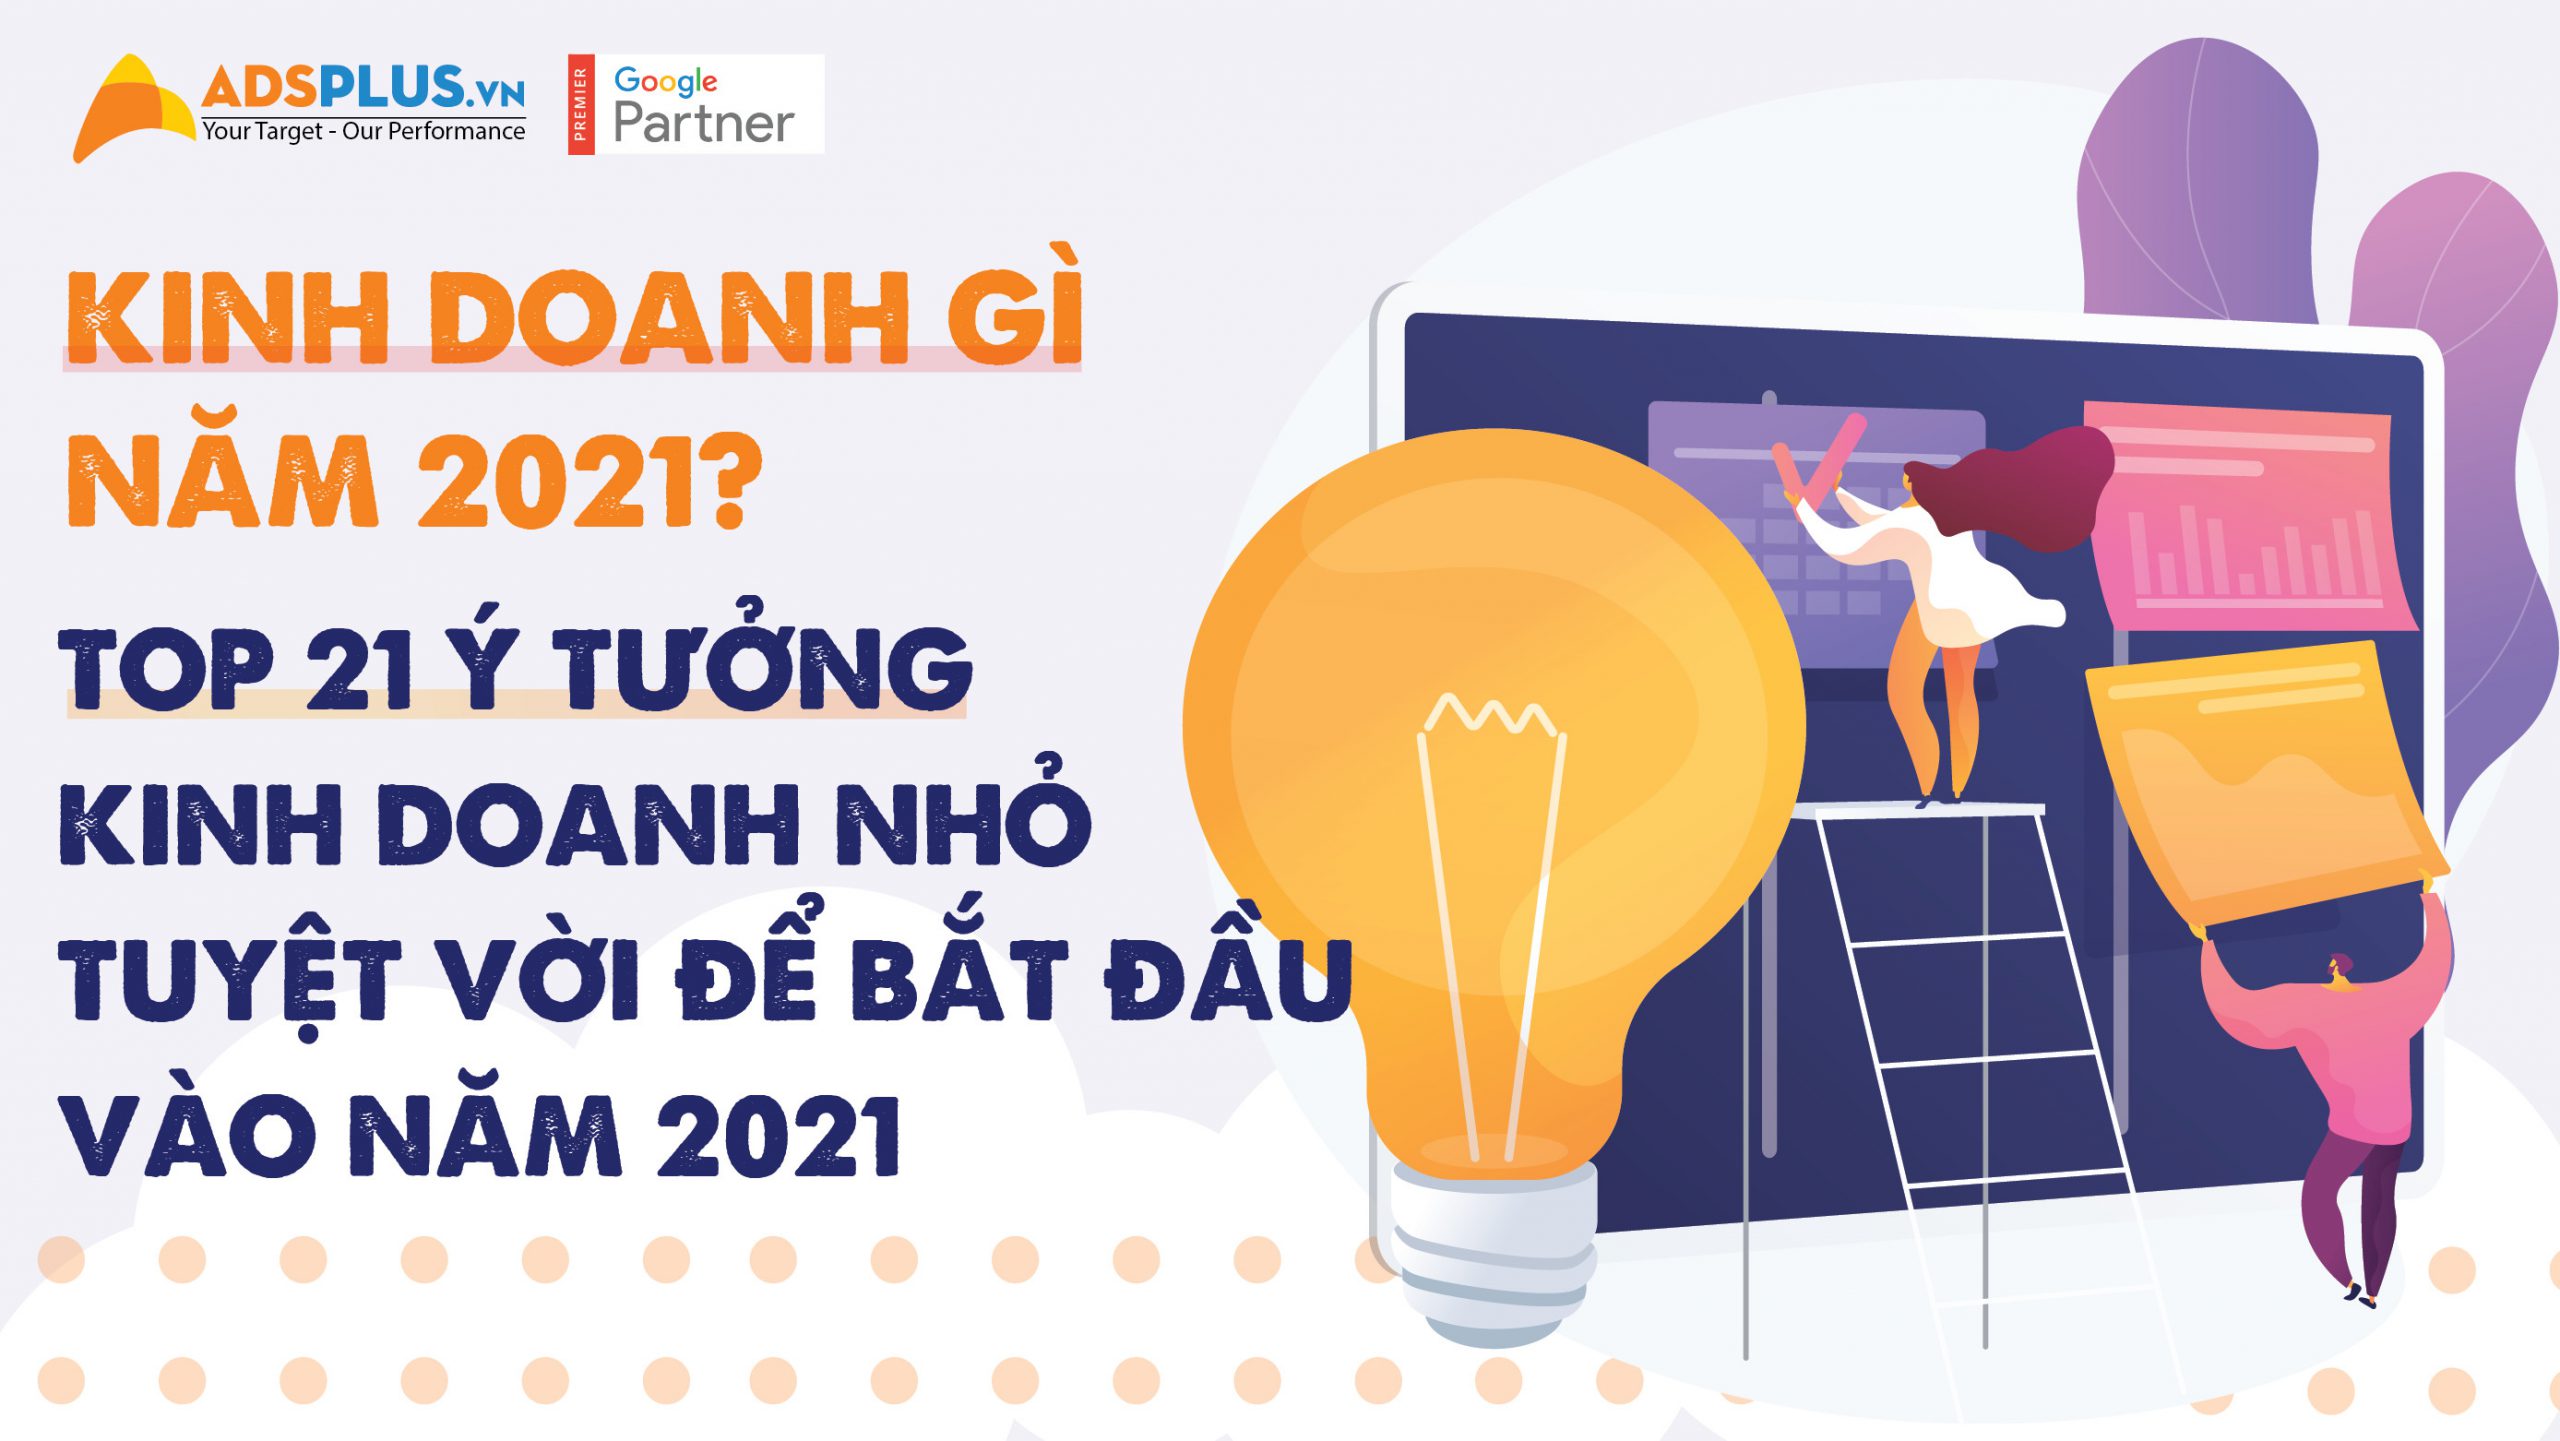 Kinh doanh gì năm 2021? Top 21 ý tưởng kinh doanh nhỏ tuyệt vời để bắt đầu vào năm 2021